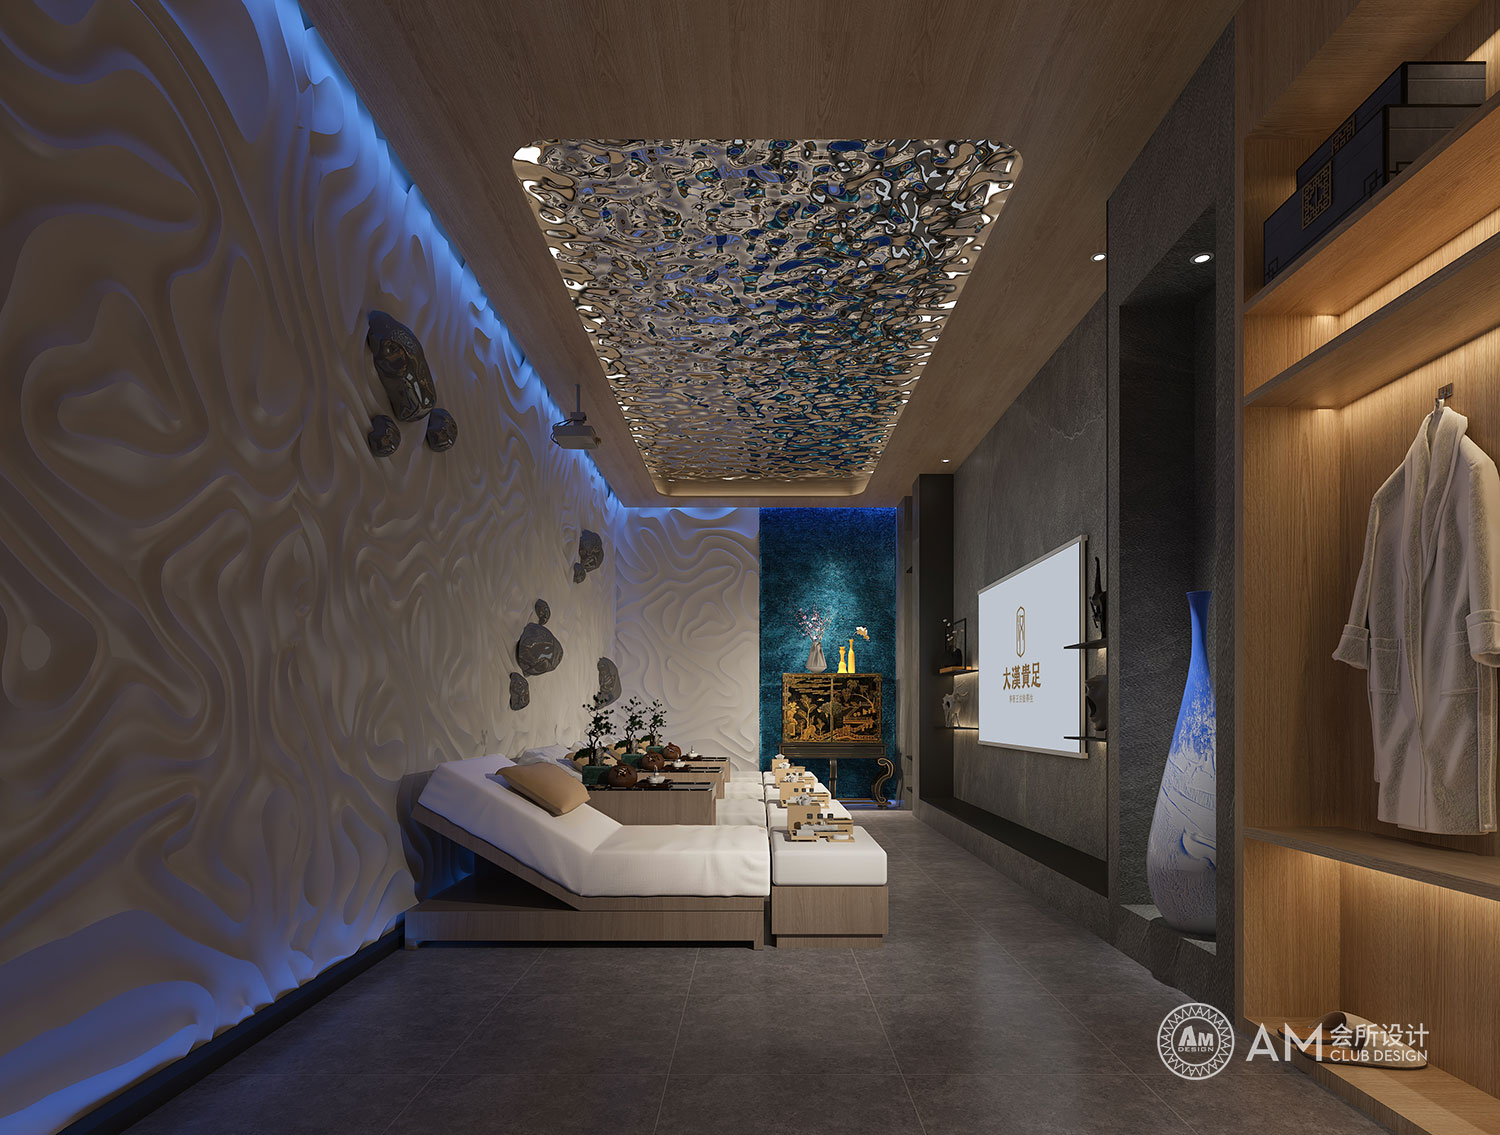 AM DESIGN | Design of spa room of Da Han Guizu Spa Club